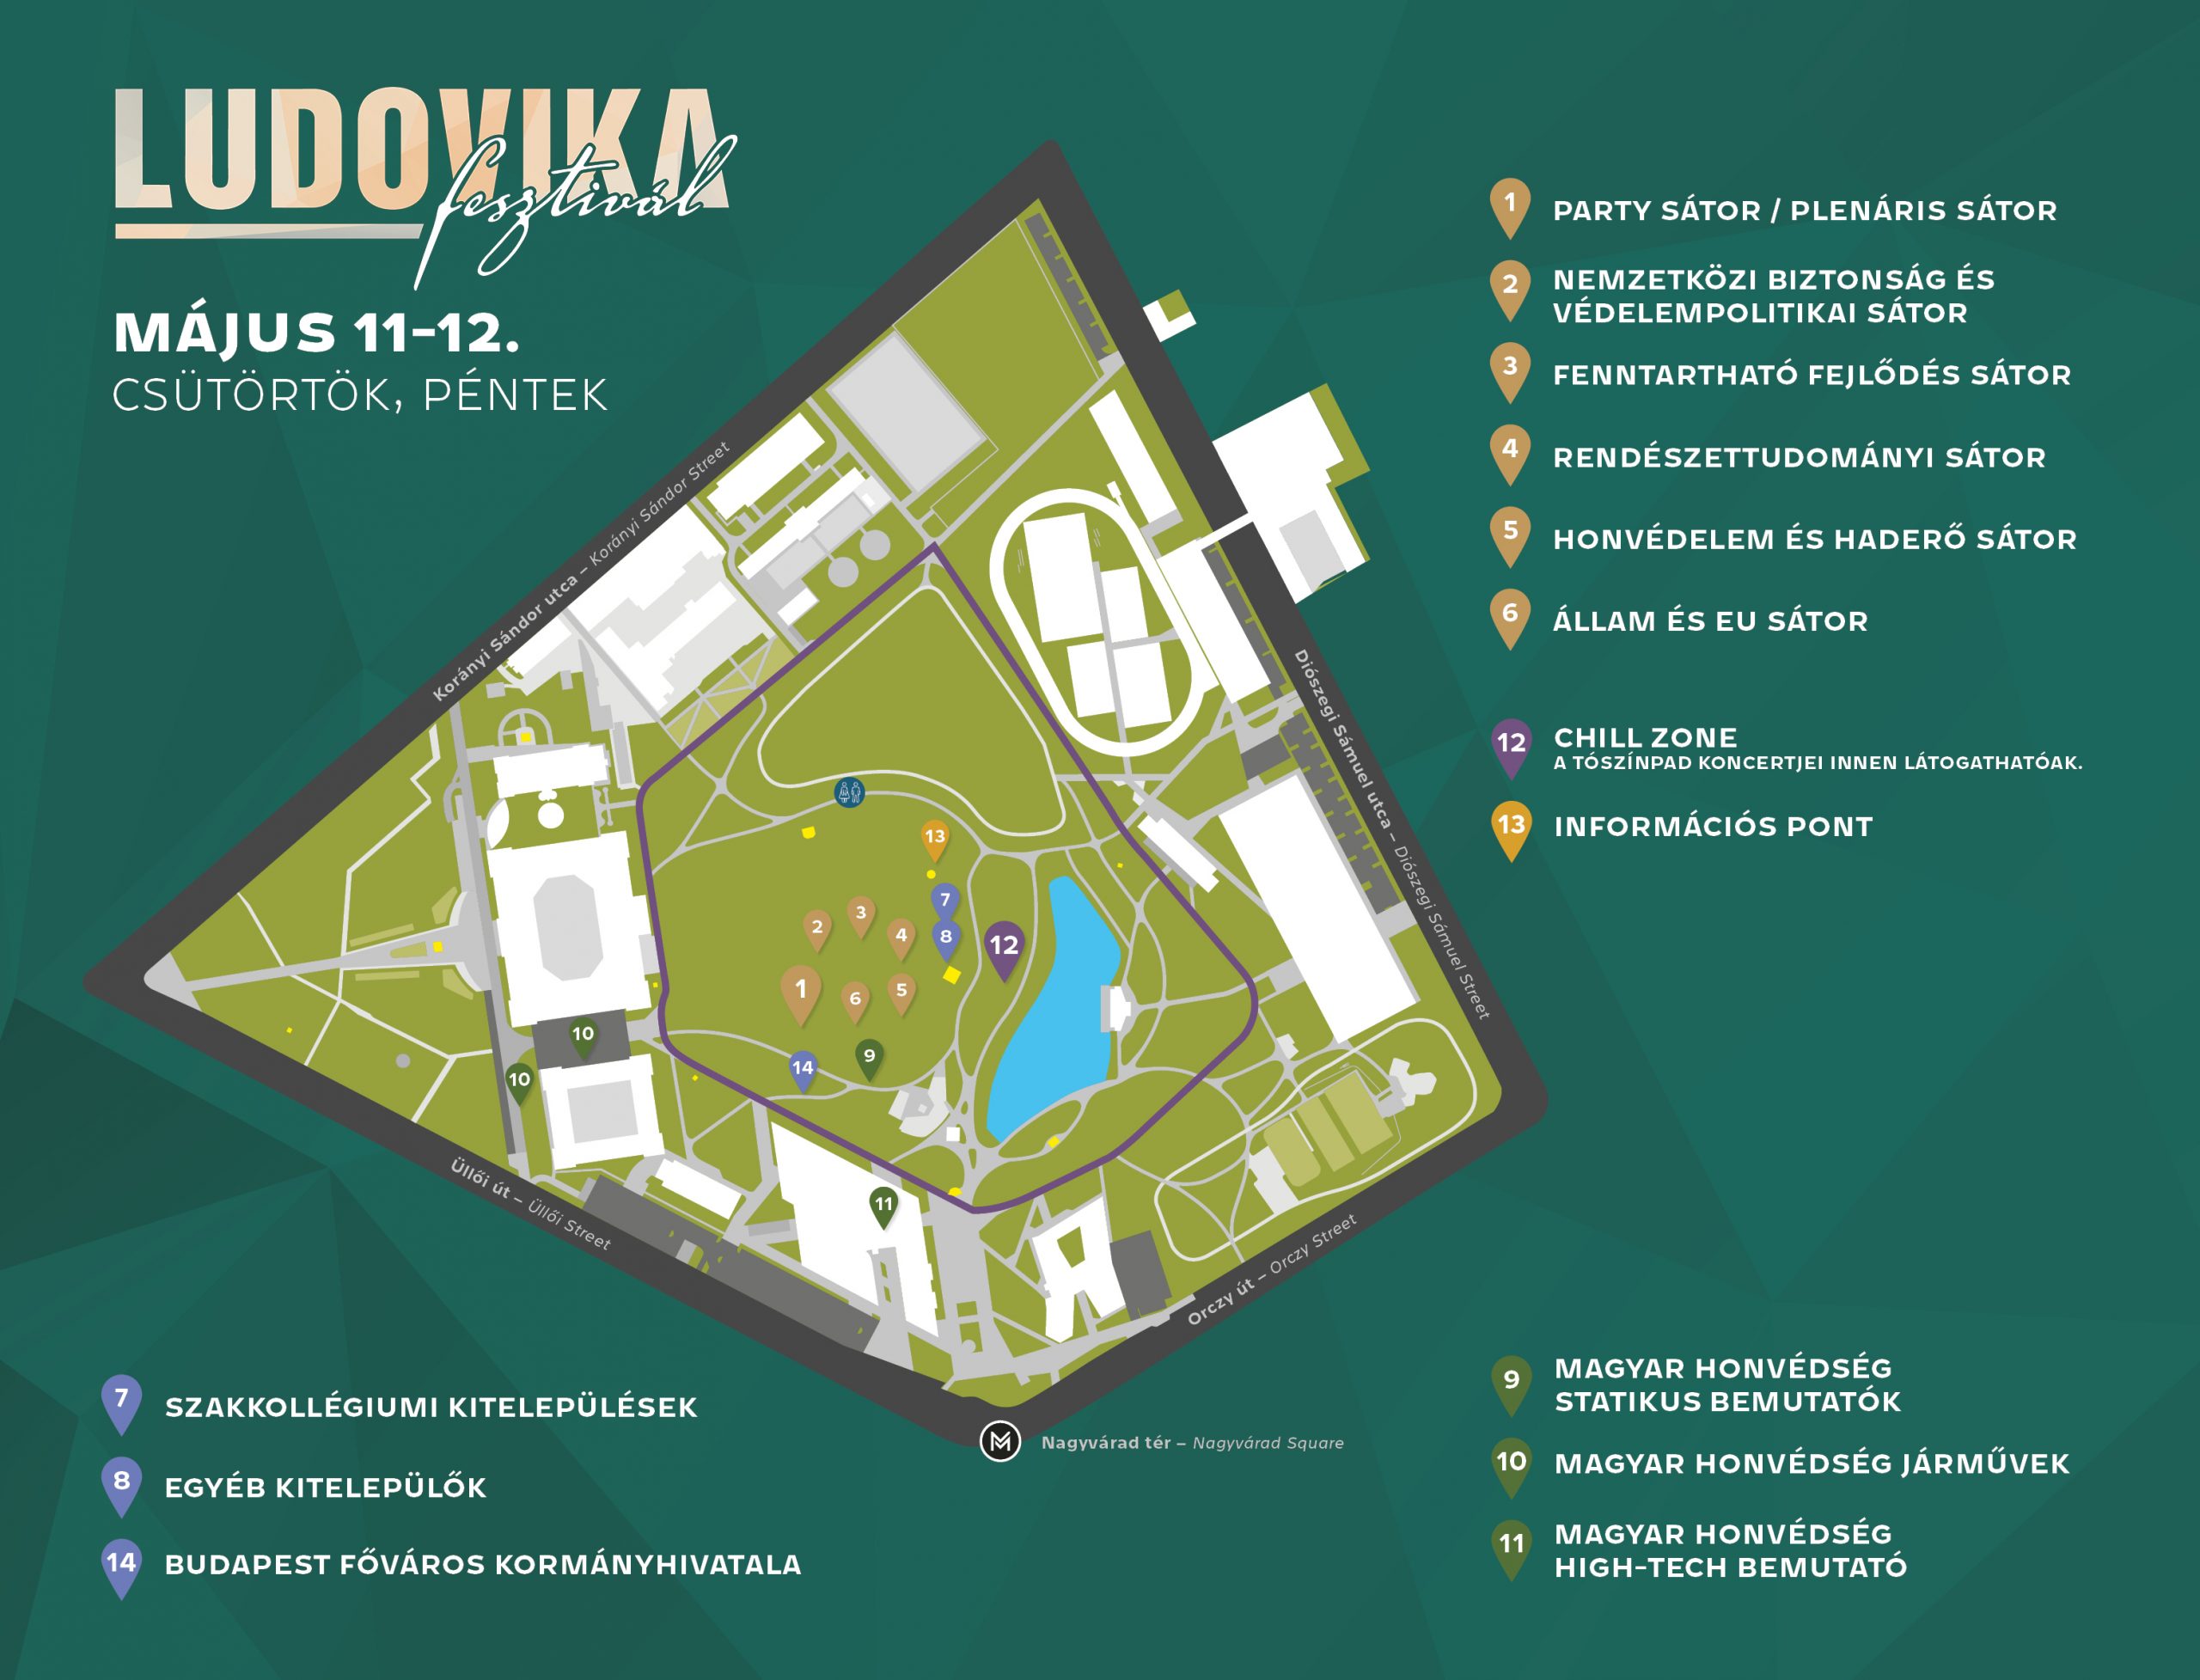 LUDOVIKA FREE UNIVERSITY DETAILED PROGRAMMES